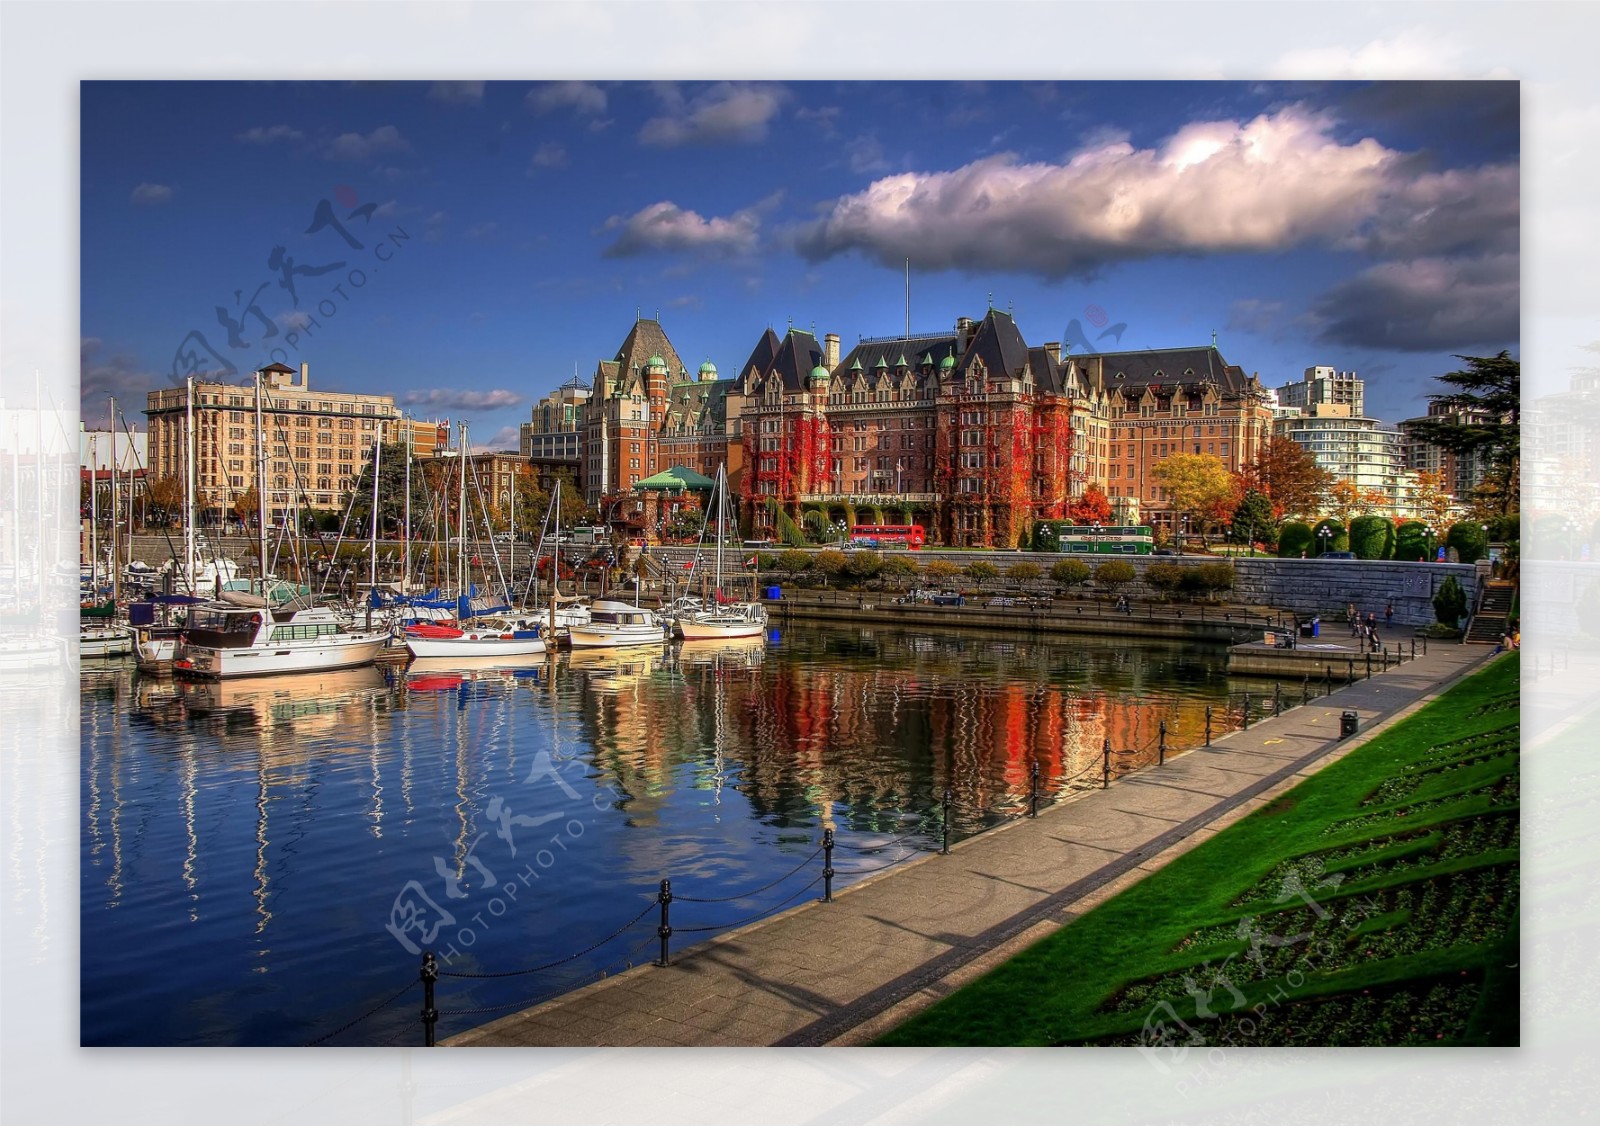 加拿大温哥华城市图片